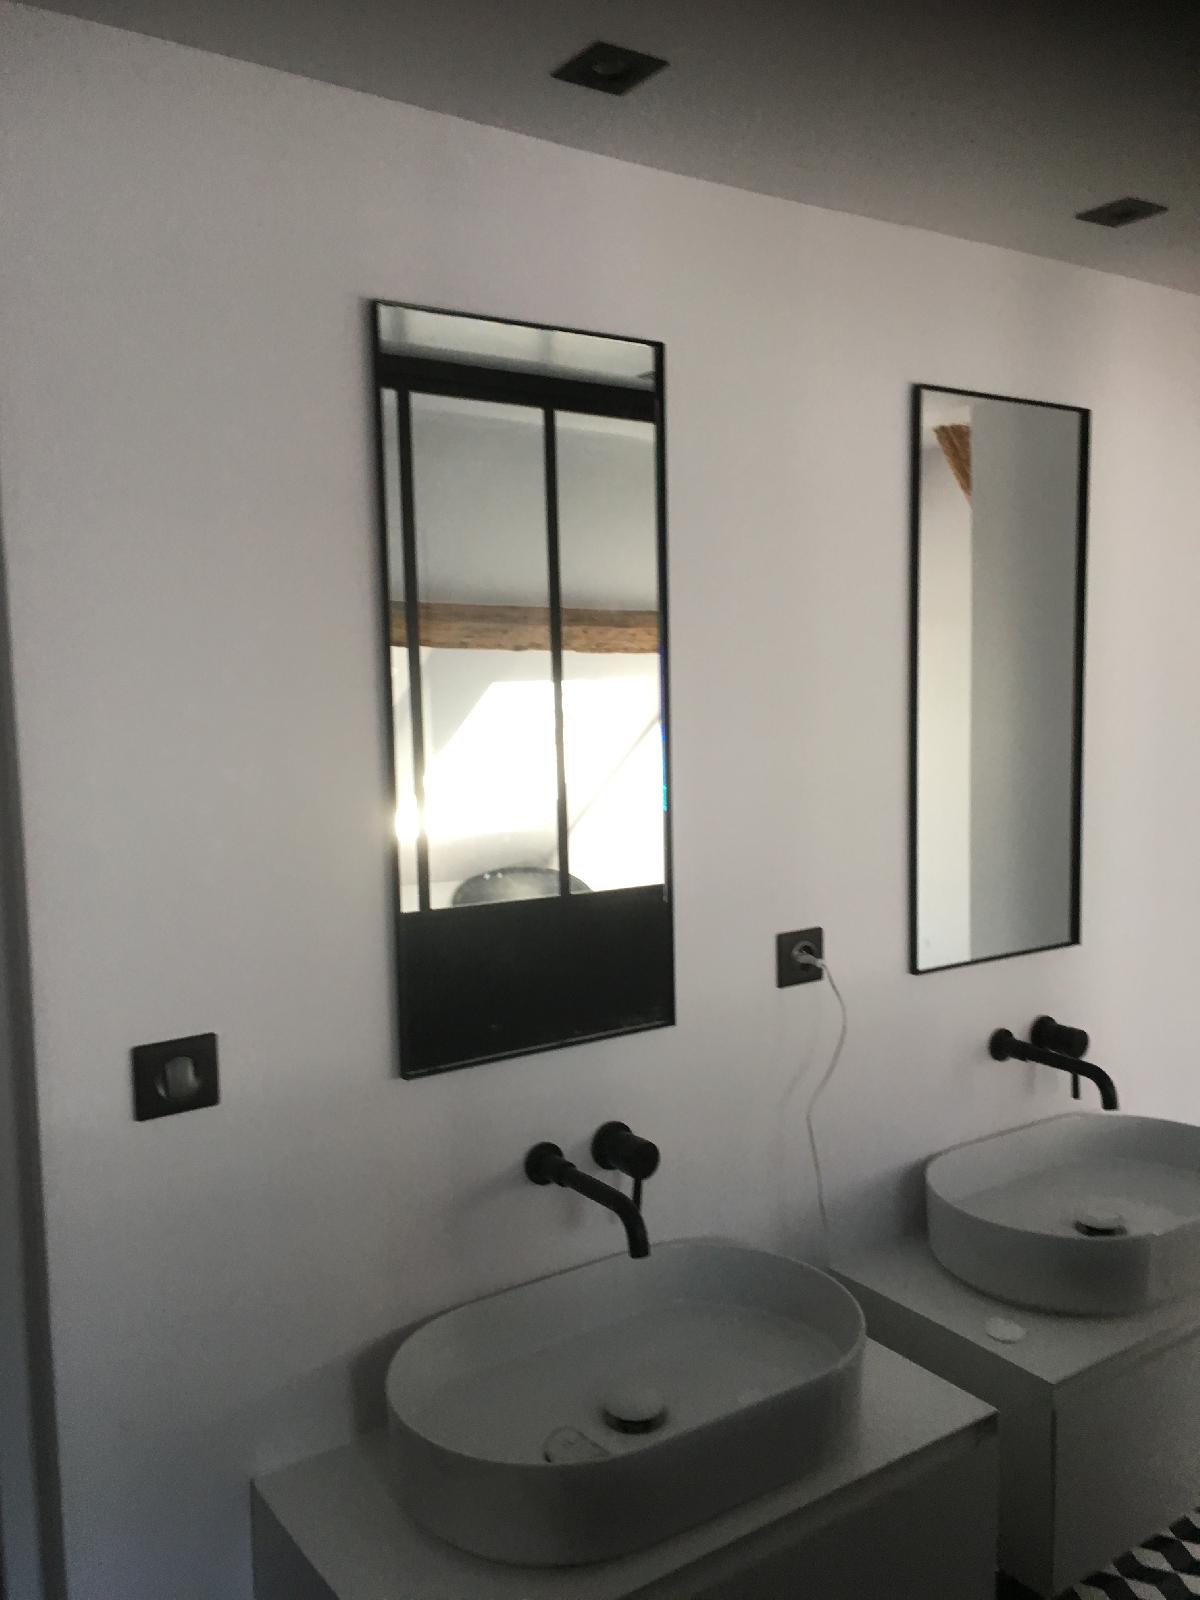 Miroirs épurés installés dans une SDB minimaliste (Rouen centre)